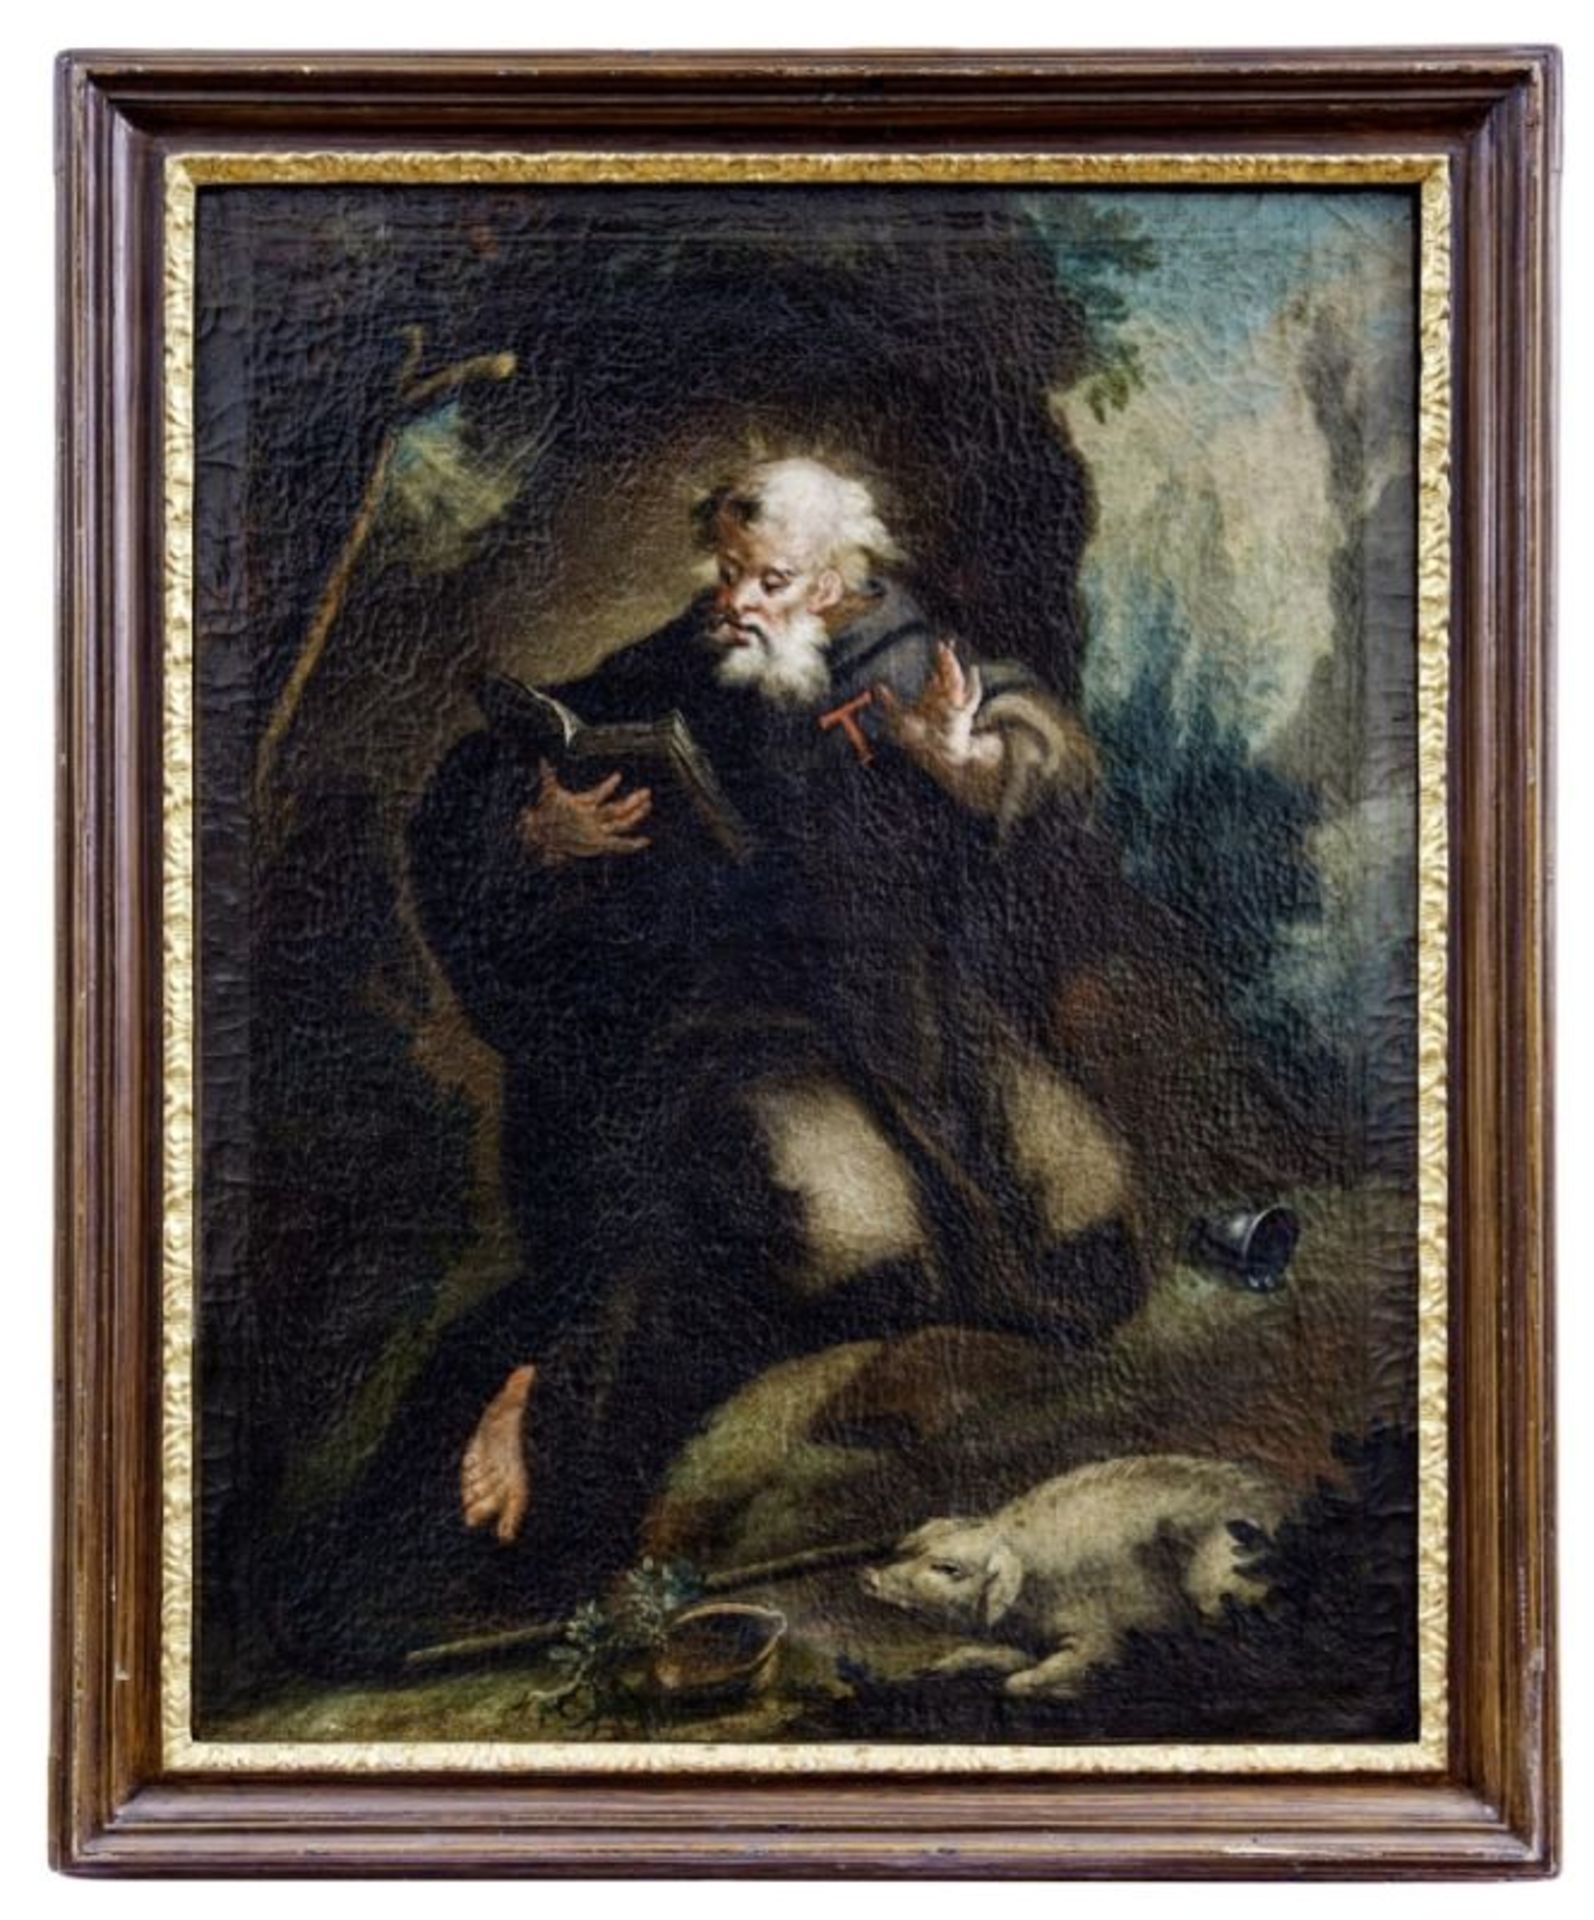 Der heilige Antonius Abbas als Einsiedler, Venezianischer Maler des 18. Jahrhunderts